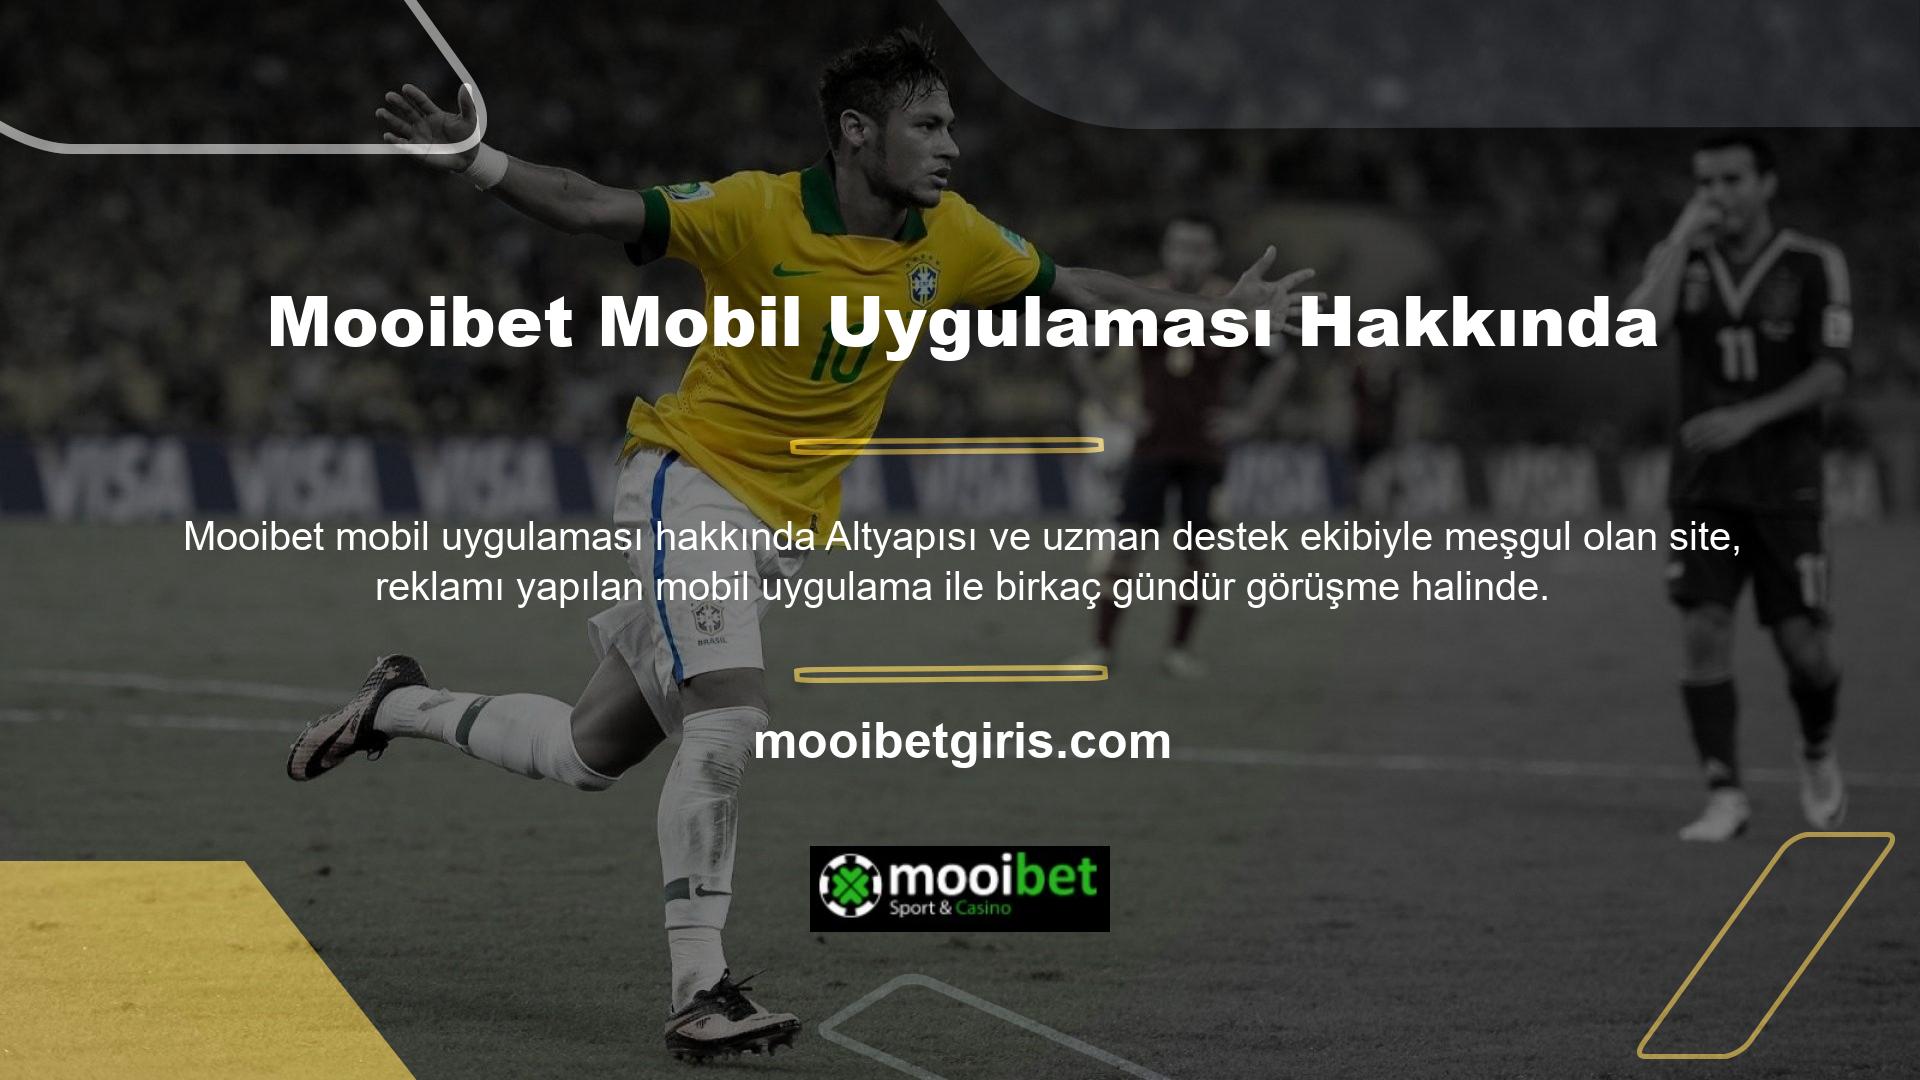 Mooibet mobil uygulaması hakkında